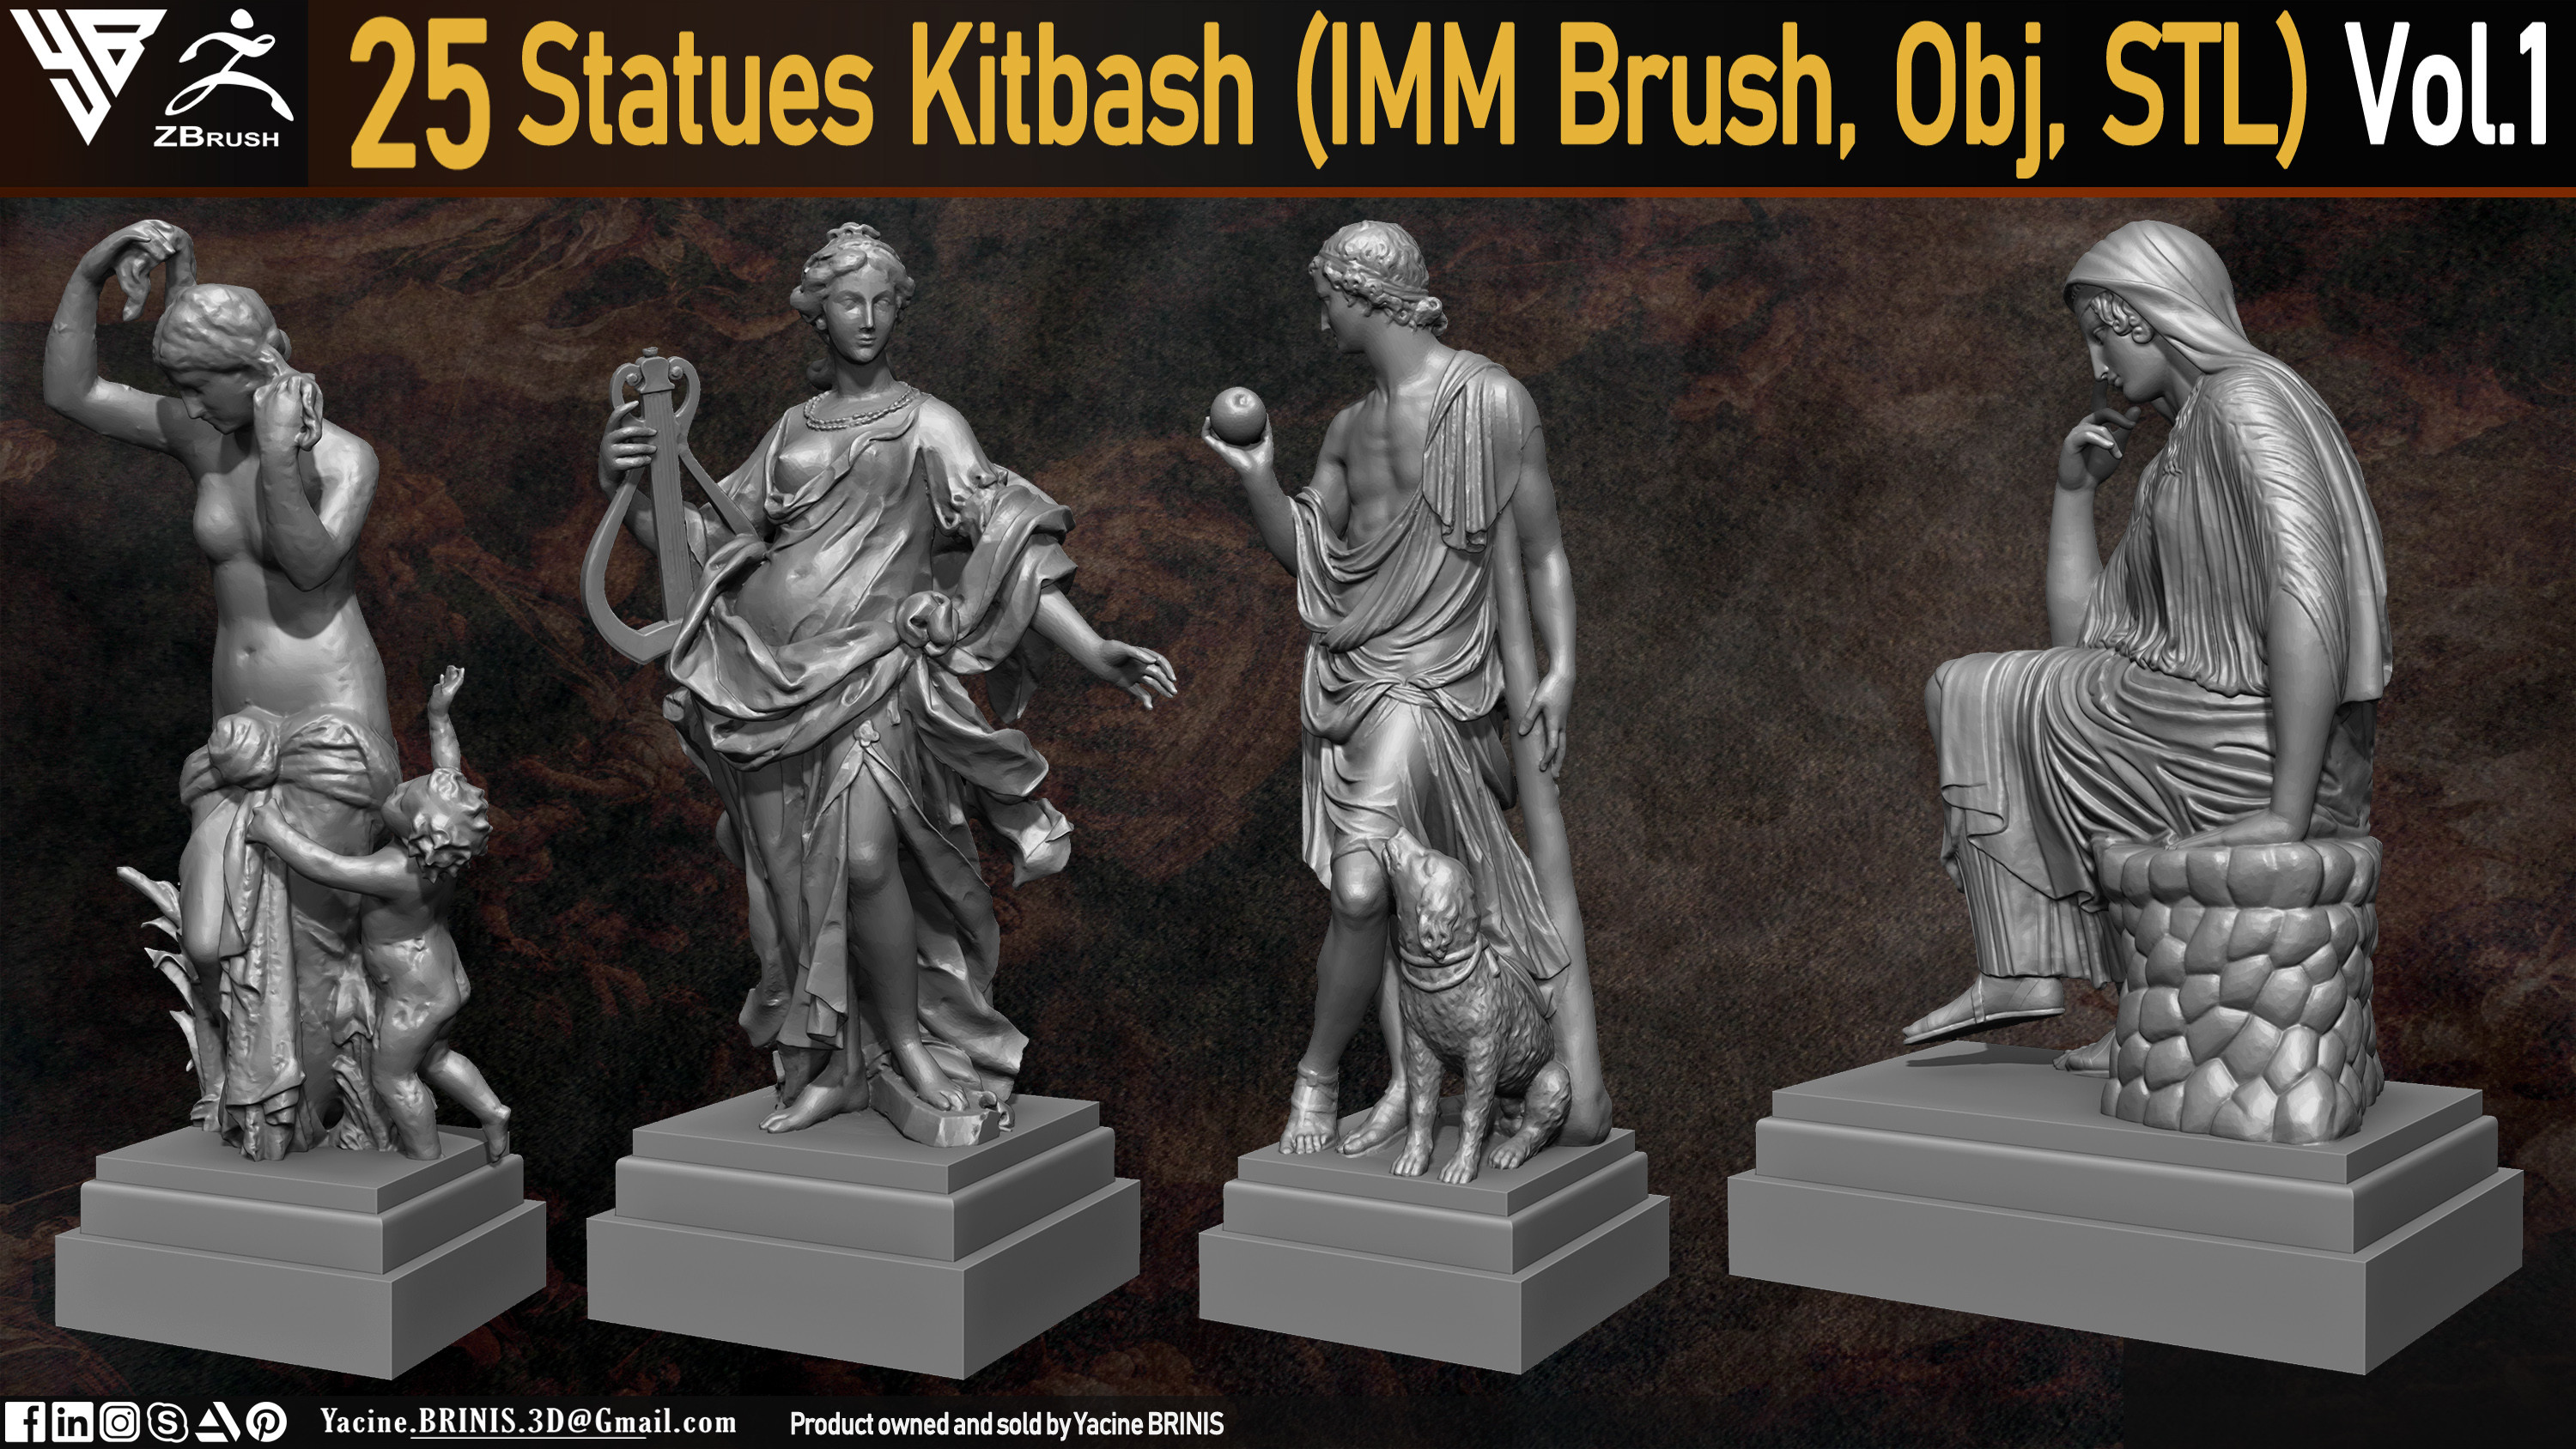 Statues Kitbash by yacine brinis Set 07